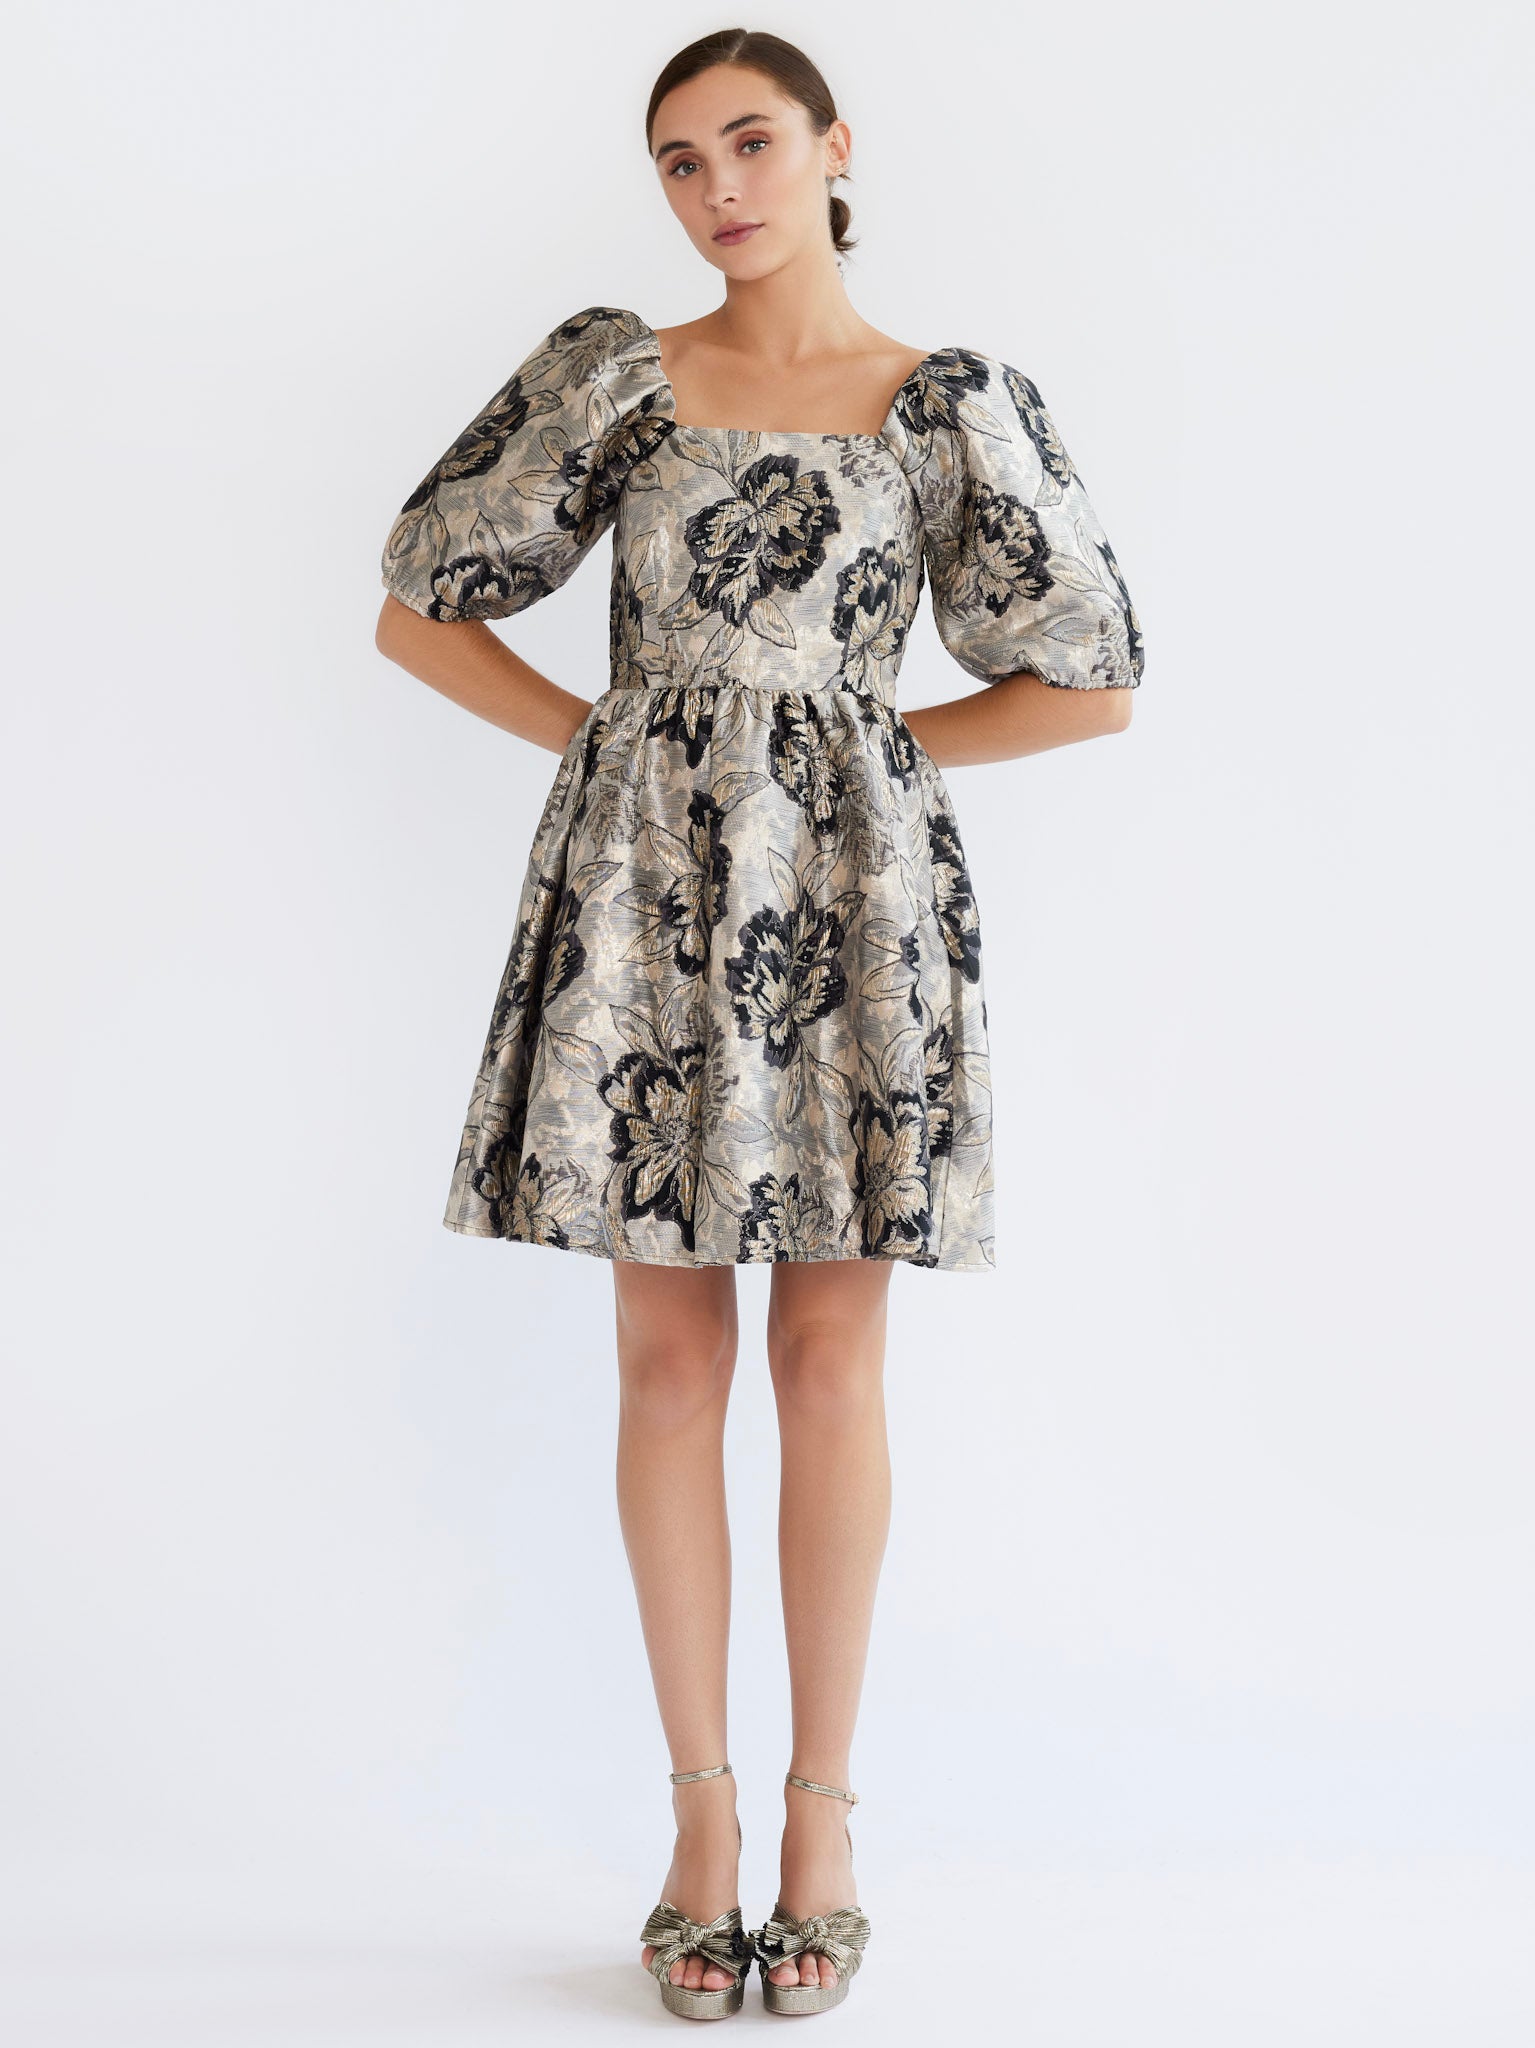 Brocade Dress Modern - Shop on Pinterest